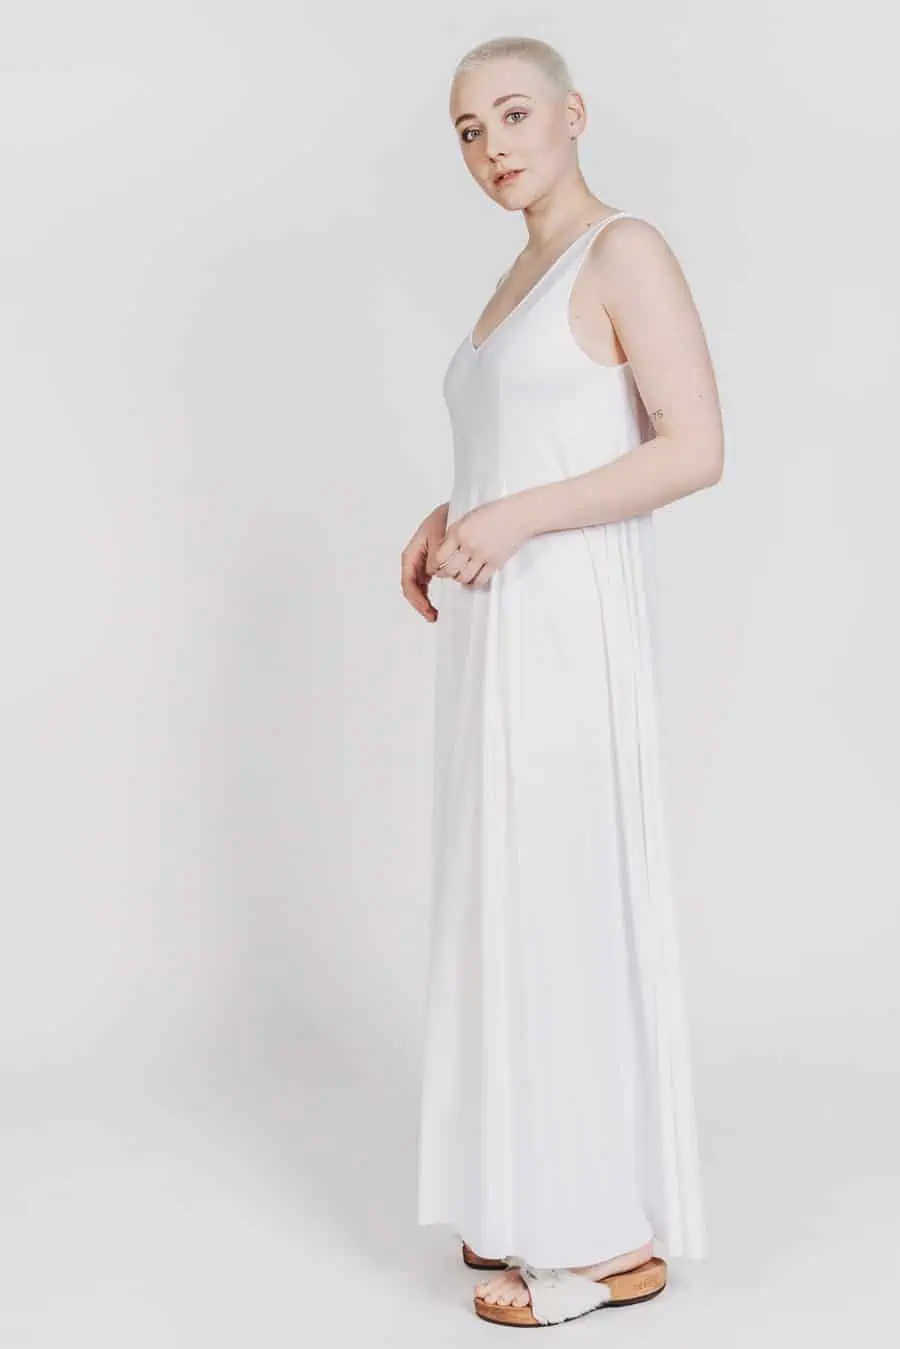 Deep White Black Modell SASHA langes Kleid weiß mit weißen Fellsandalen aus Holz von Devich, ärmelloses Sommerkleid mit V-Ausschnitt, Ansicht gesamt von links